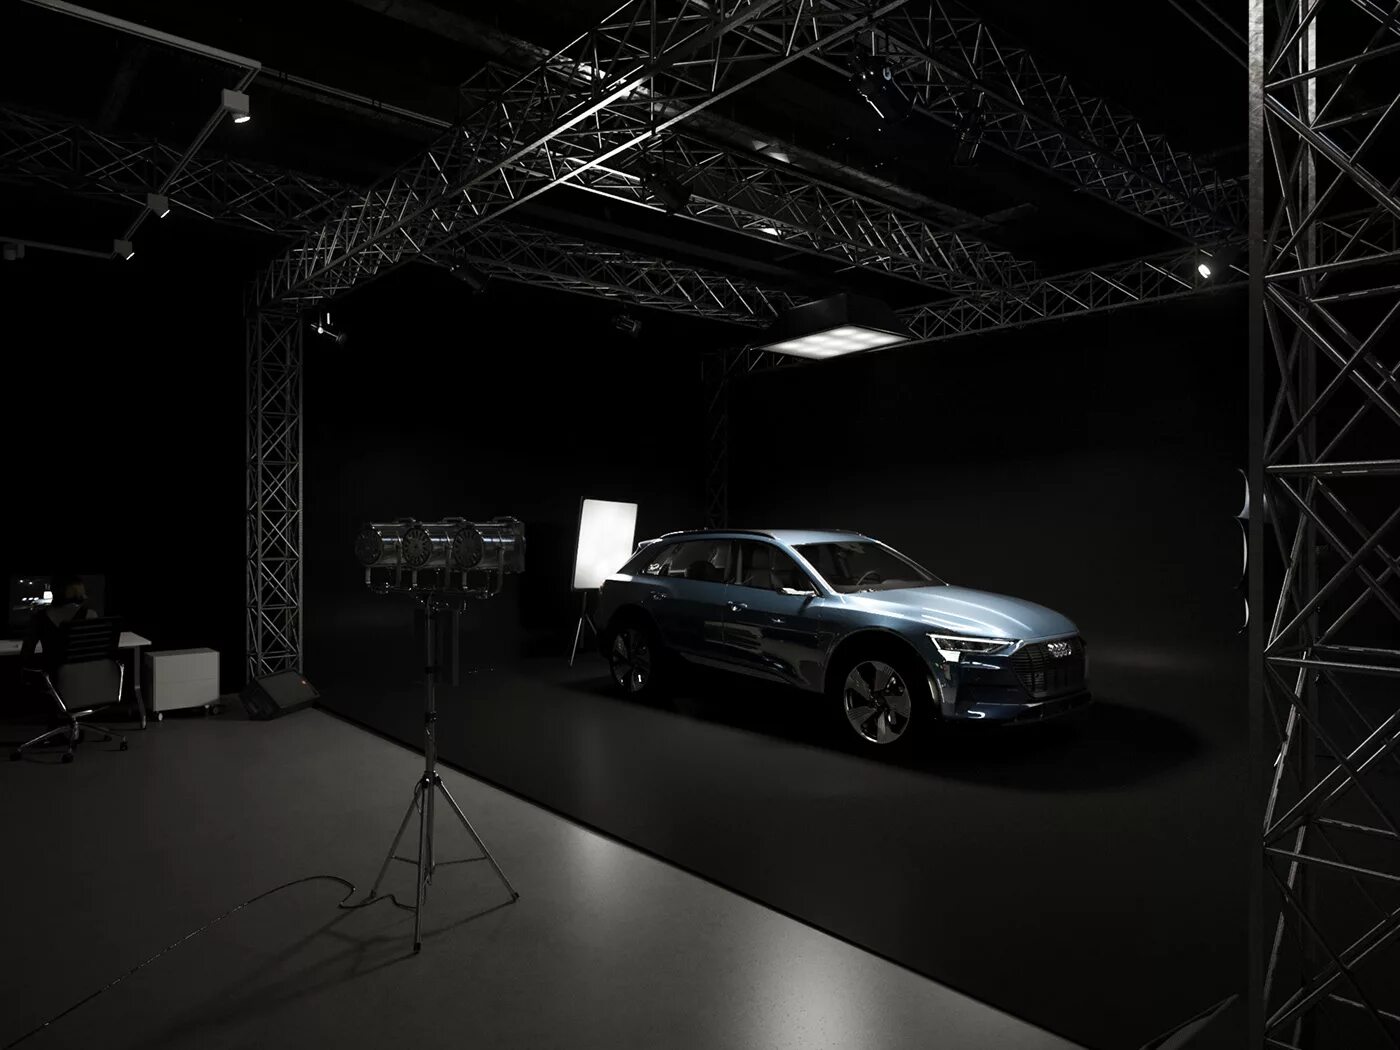 Rendering scene. Студия для рендеринга машин. Студийный рендер. Audi Scene. 3d Studio Scene rendering.